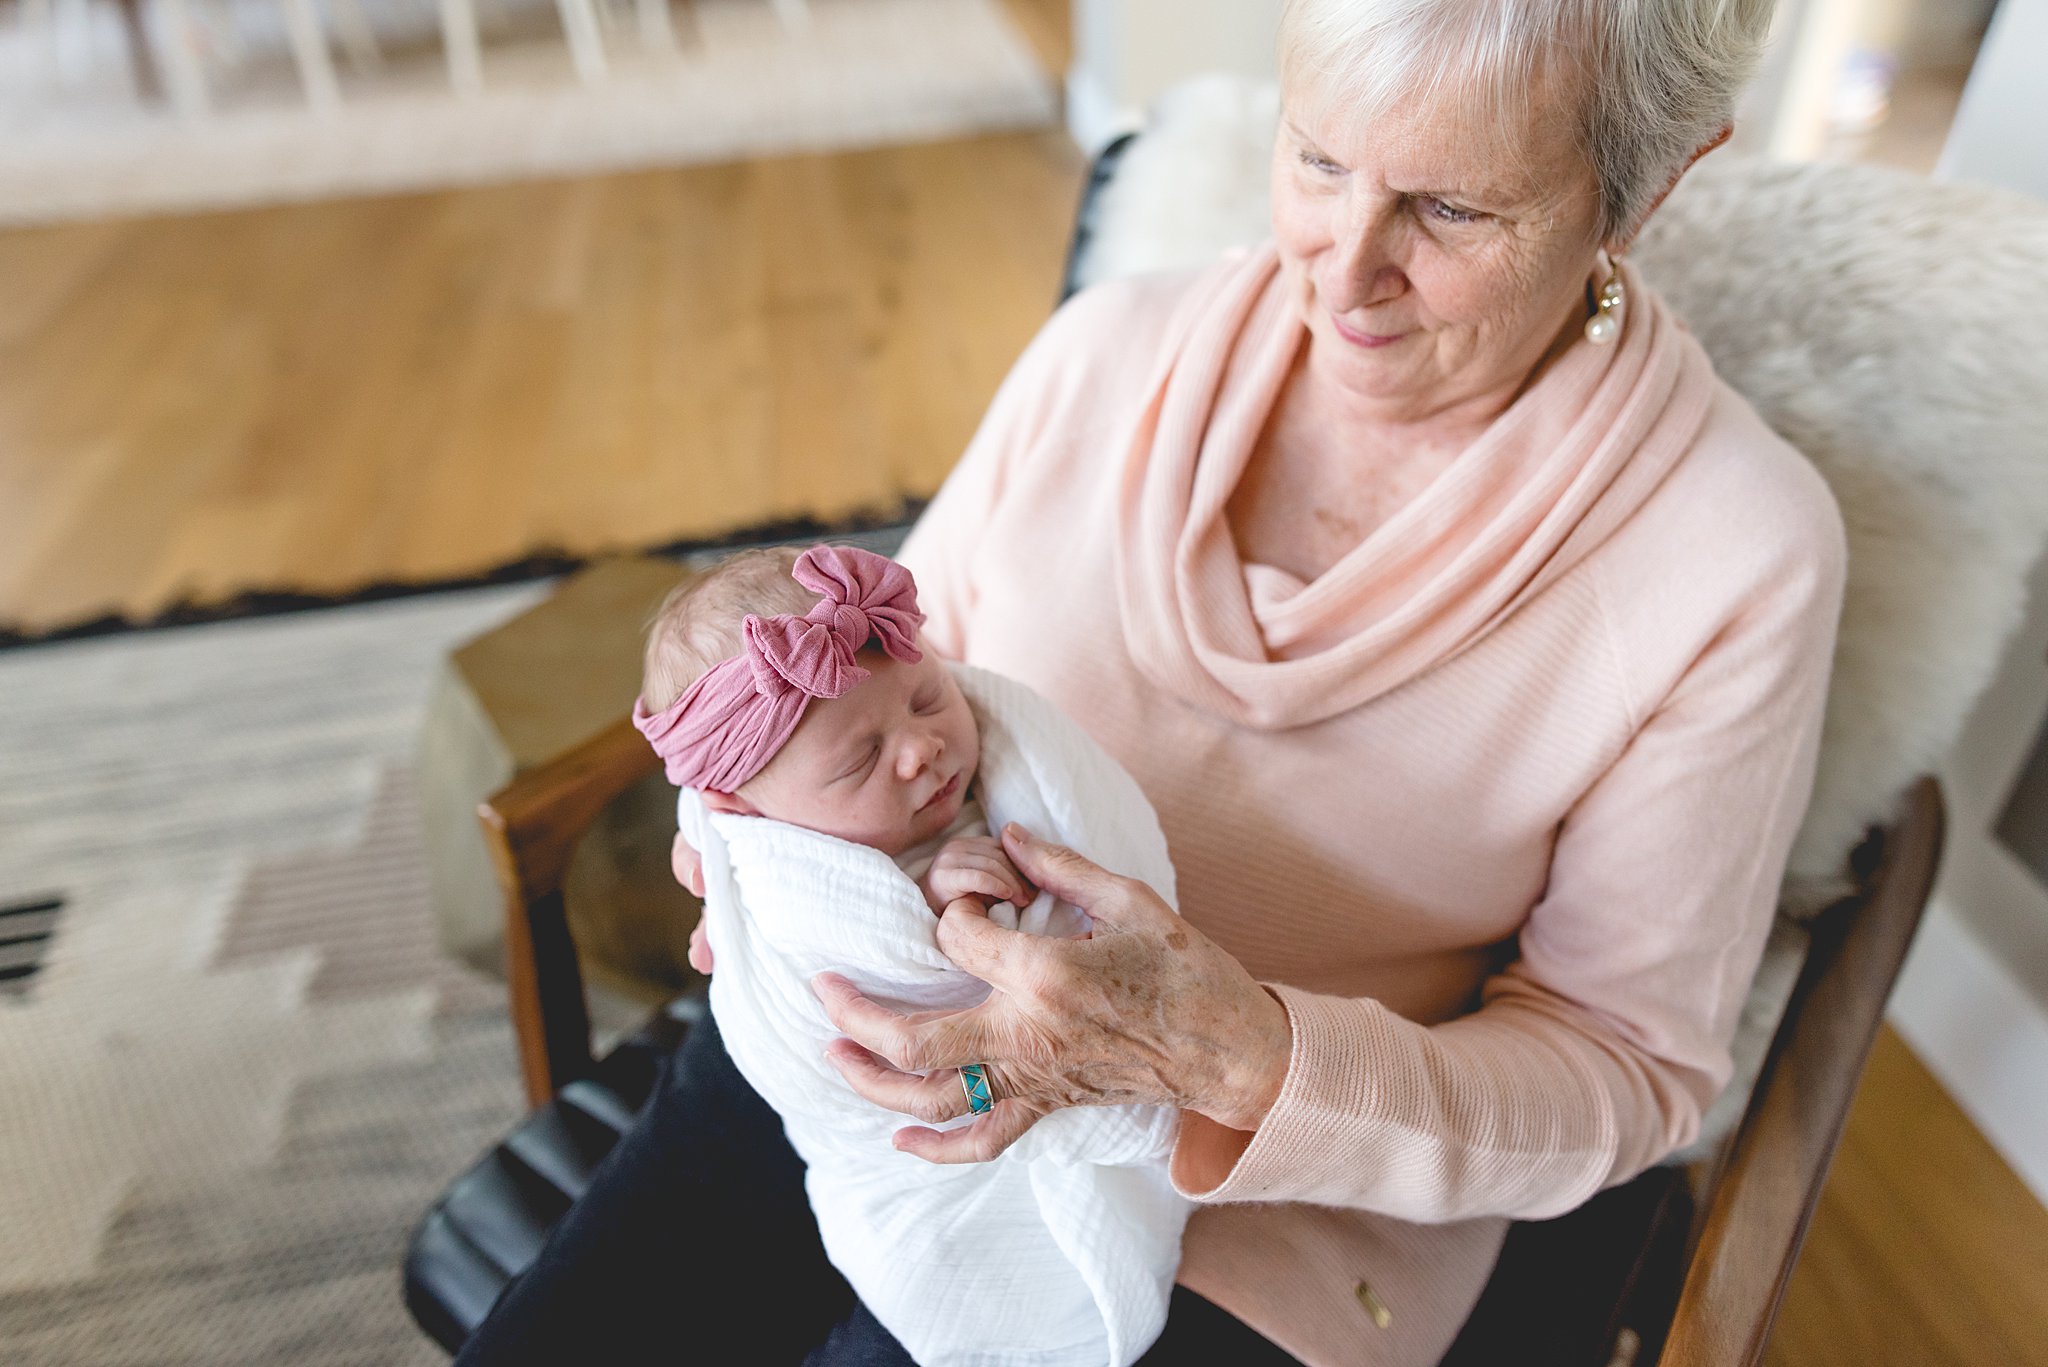  grandma holds her new granddaughter 